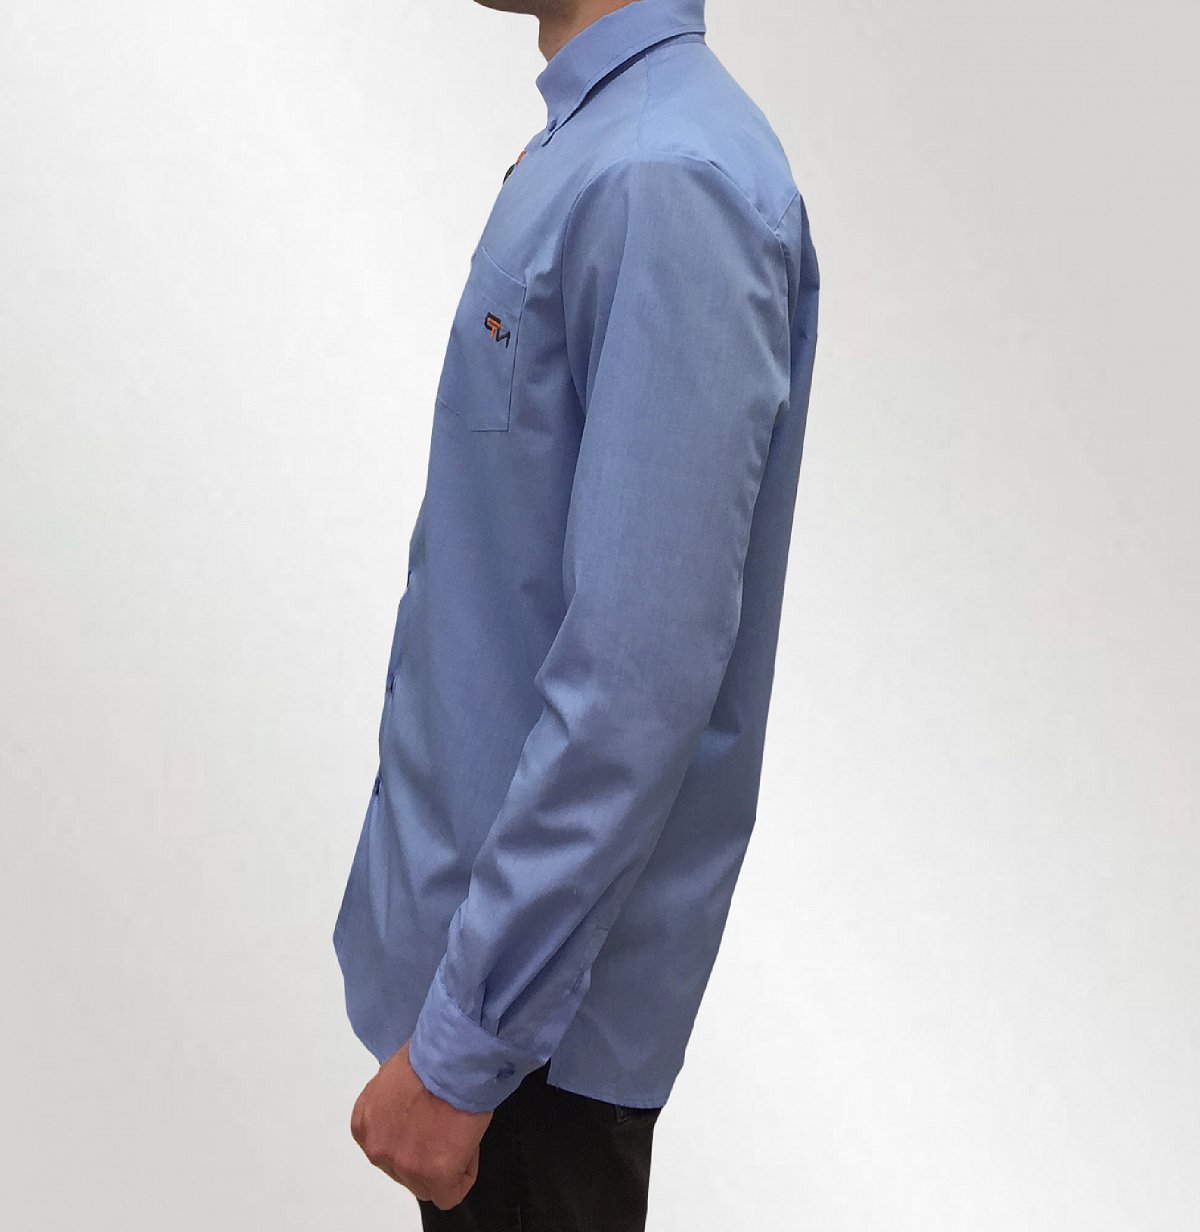 Рубашки с логотипом на заказ  - пример модели синяя рубашка с логотипом